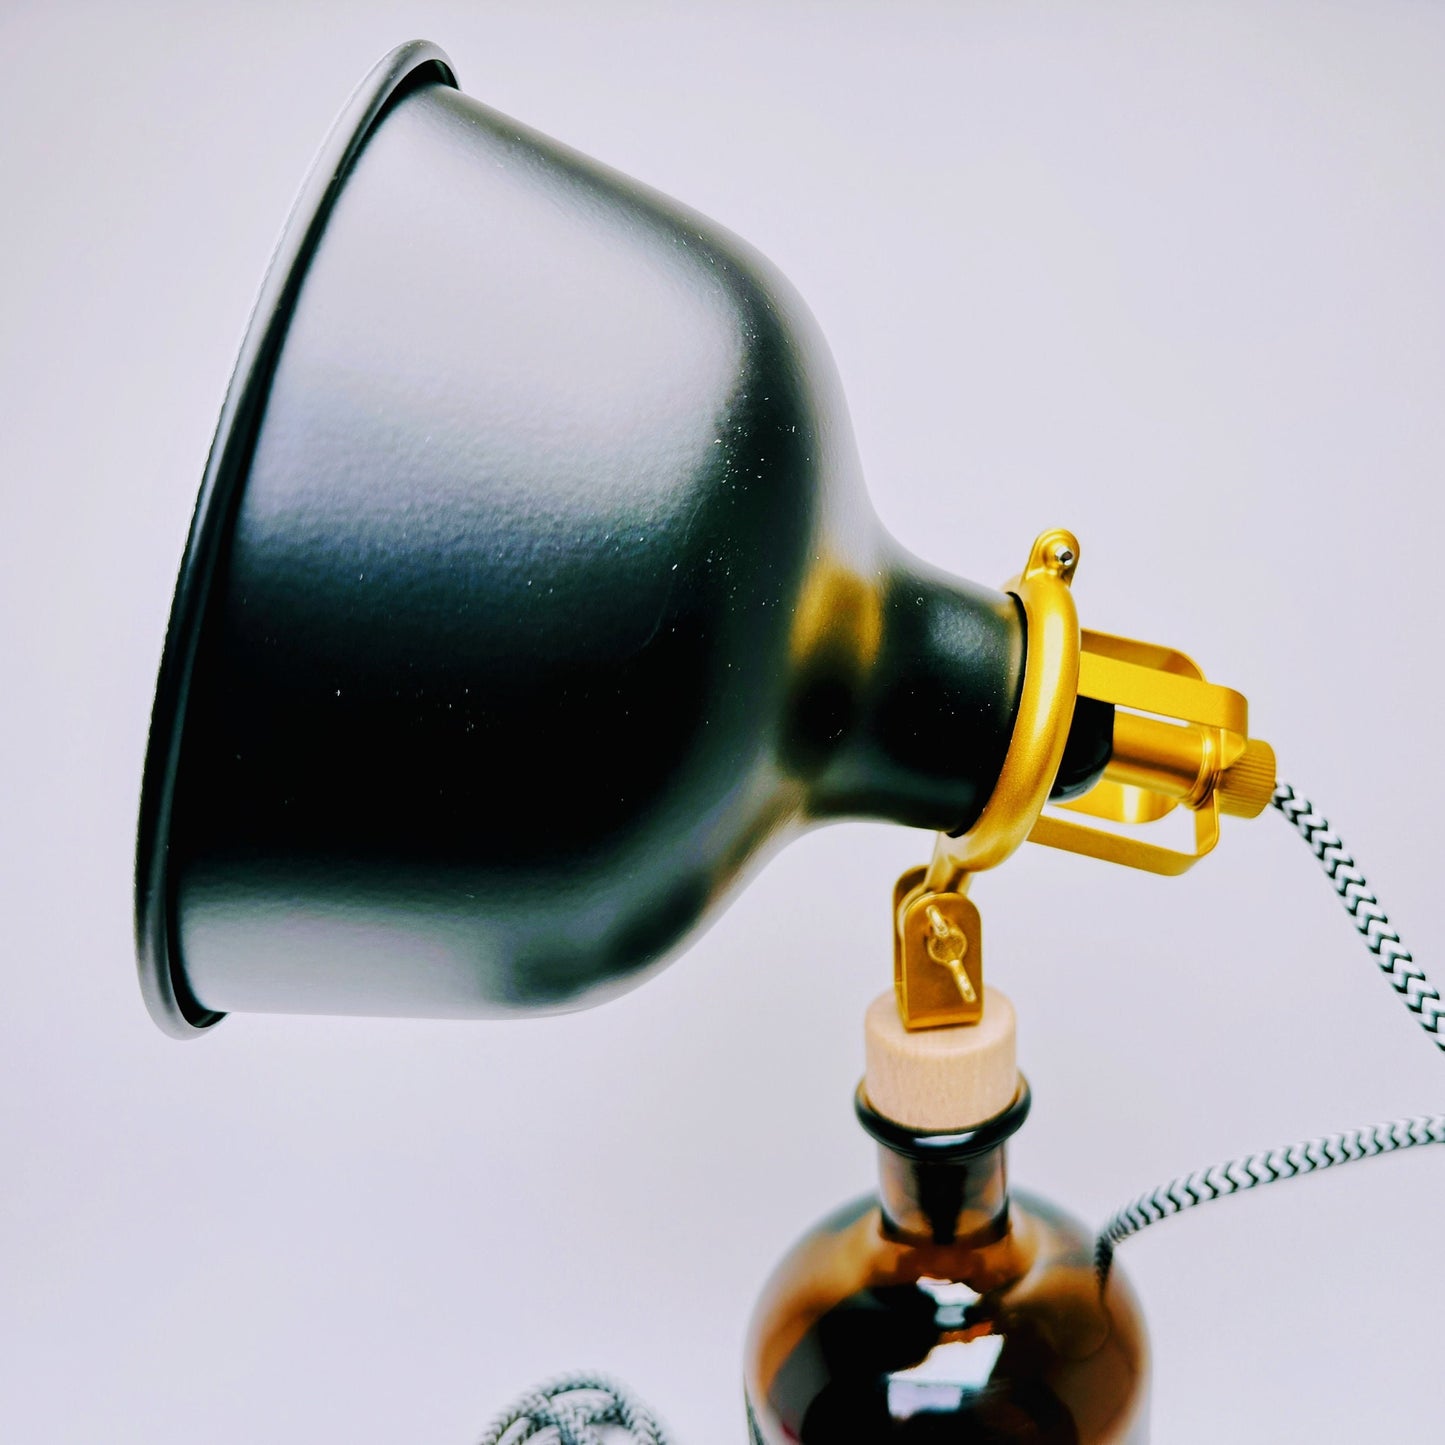 Monkey47 Gin Vintage-Lampe | Handgemachte nachhaltige Tischlampe aus Monkey 47 Gin | Einzigartige Geschenkidee | Deko-Licht | Upcycling